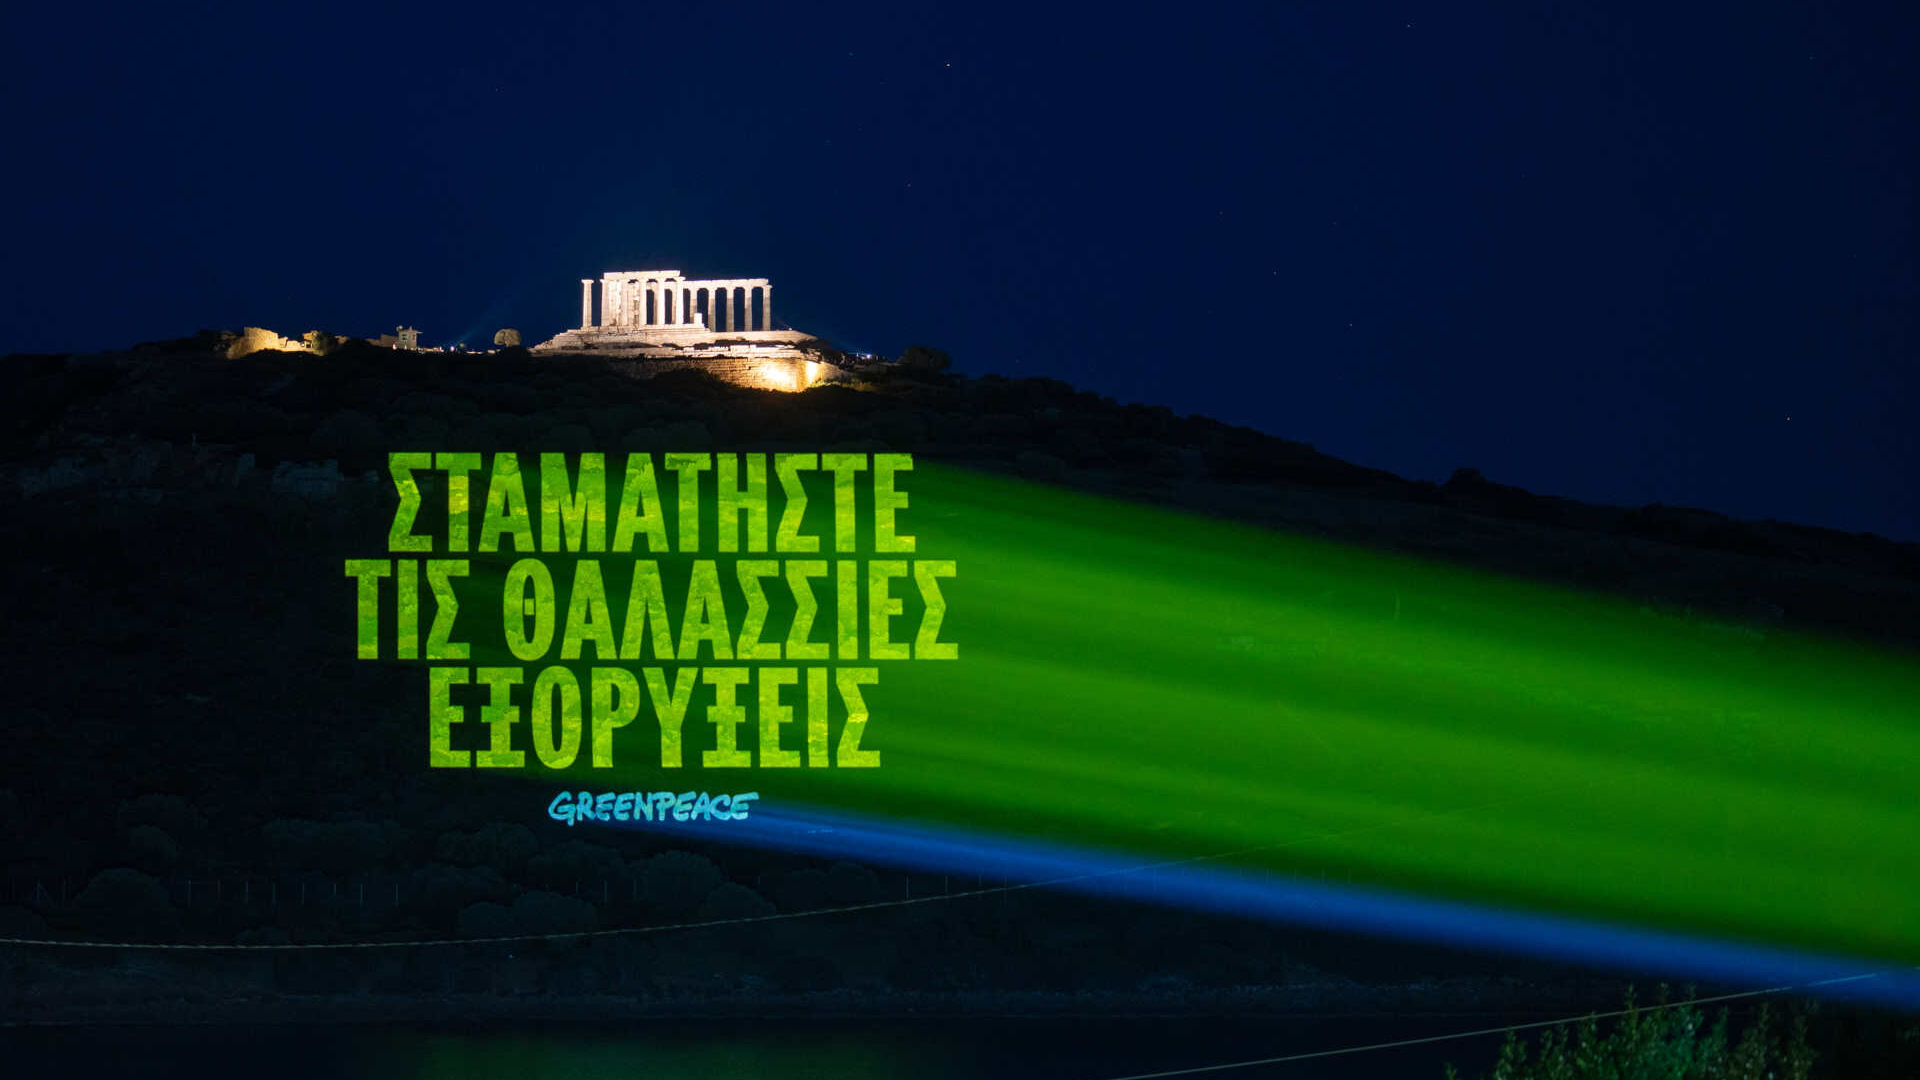 Grčka: poruka na grčkom koja glasi